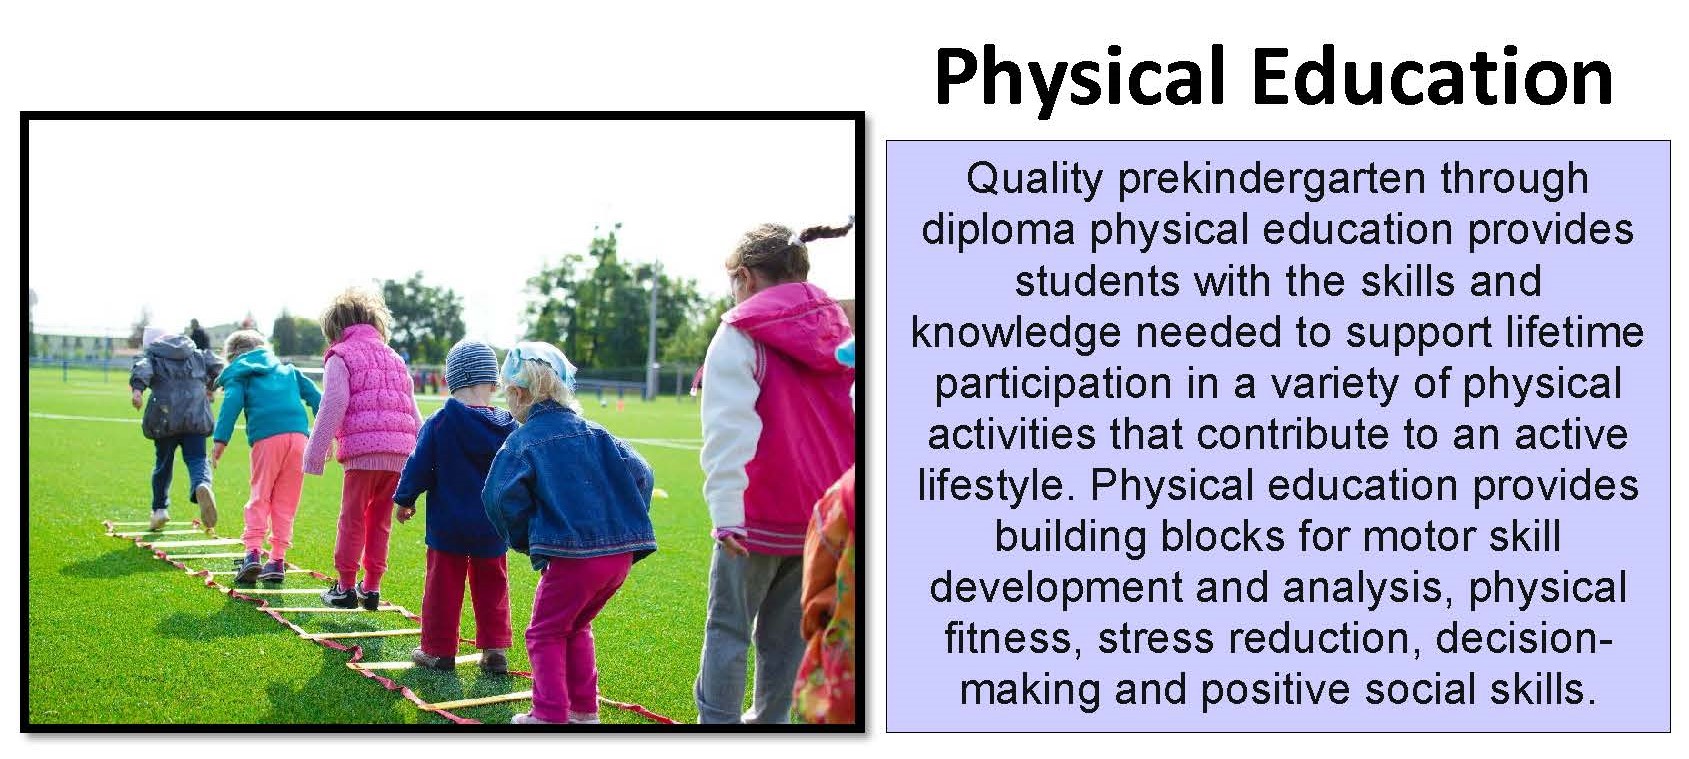 Physical Education Image